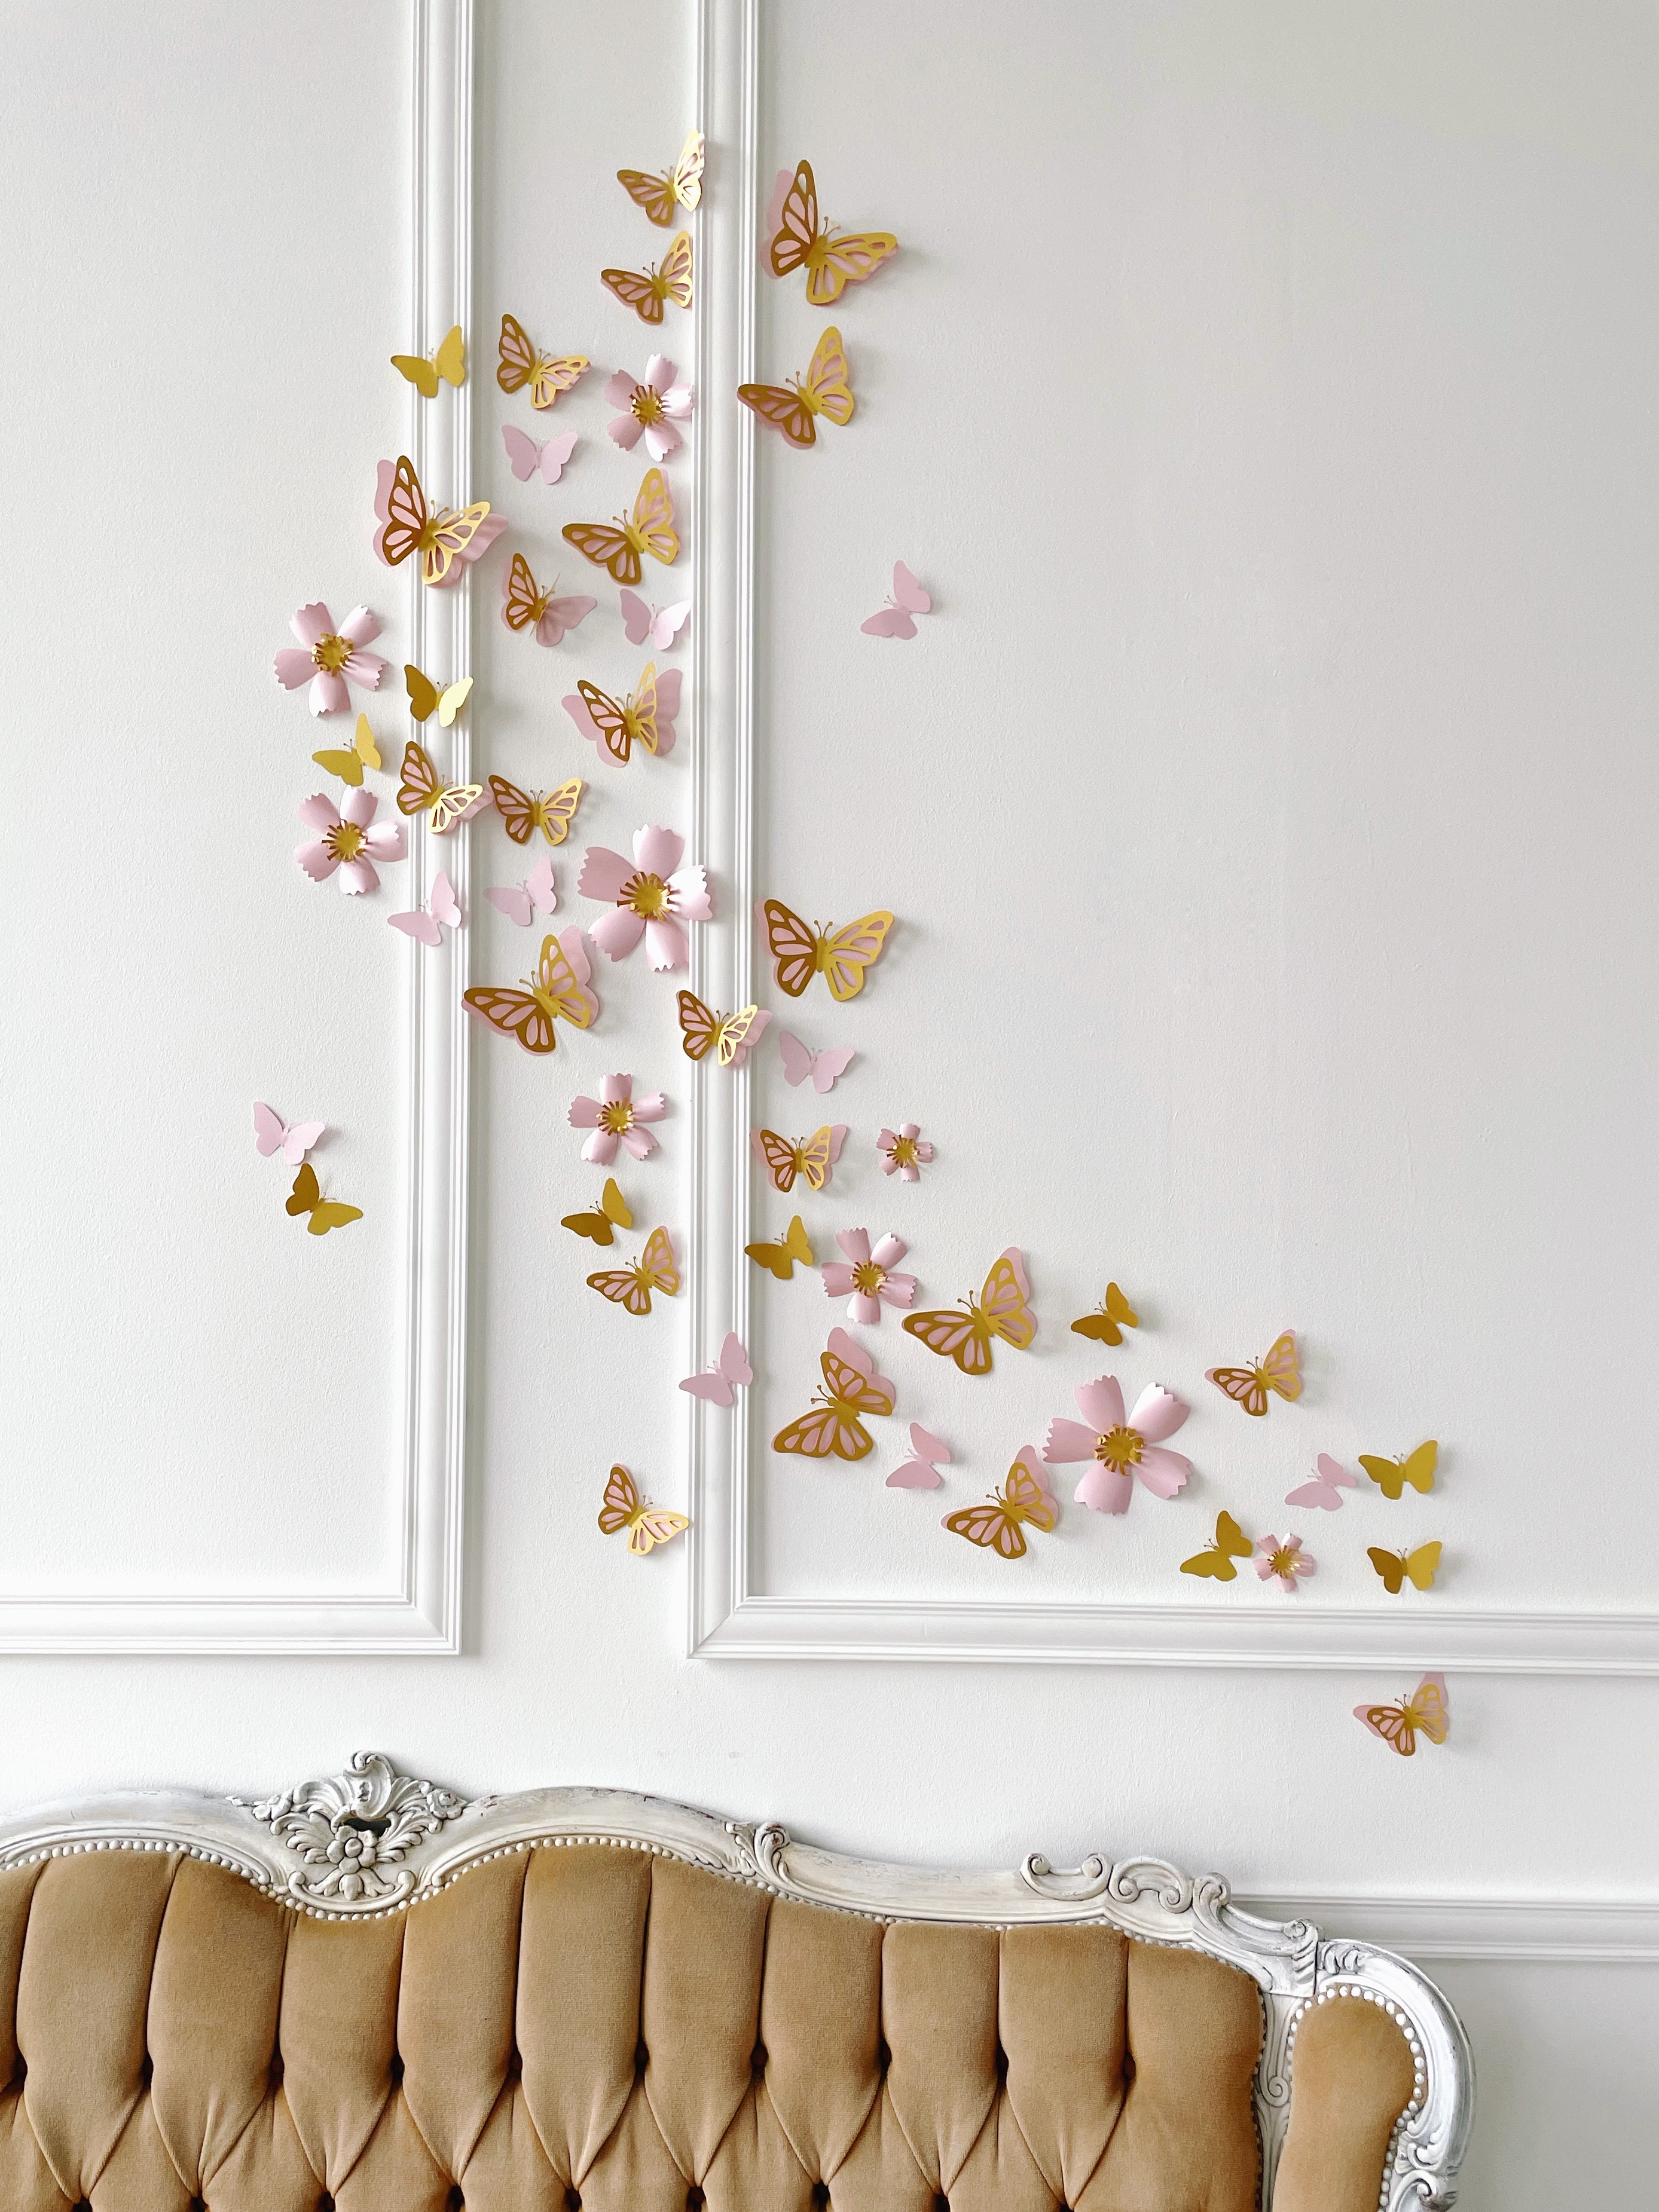 Бабочки На Стене: + (Фото) Красивых Оформлений В Интерьере